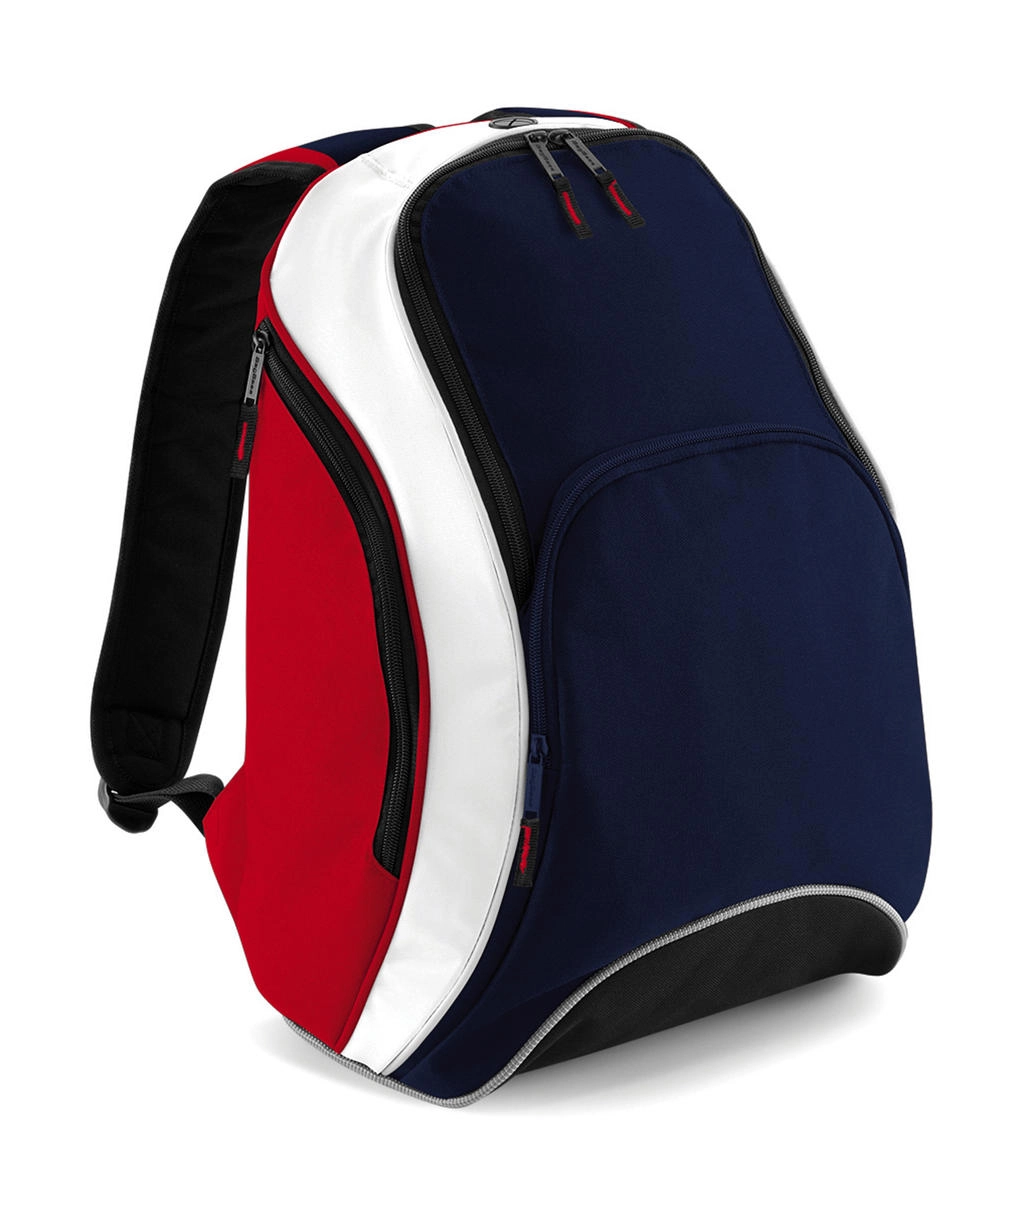 Teamwear Backpack zum Besticken und Bedrucken in der Farbe French Navy/Classic Red/White mit Ihren Logo, Schriftzug oder Motiv.